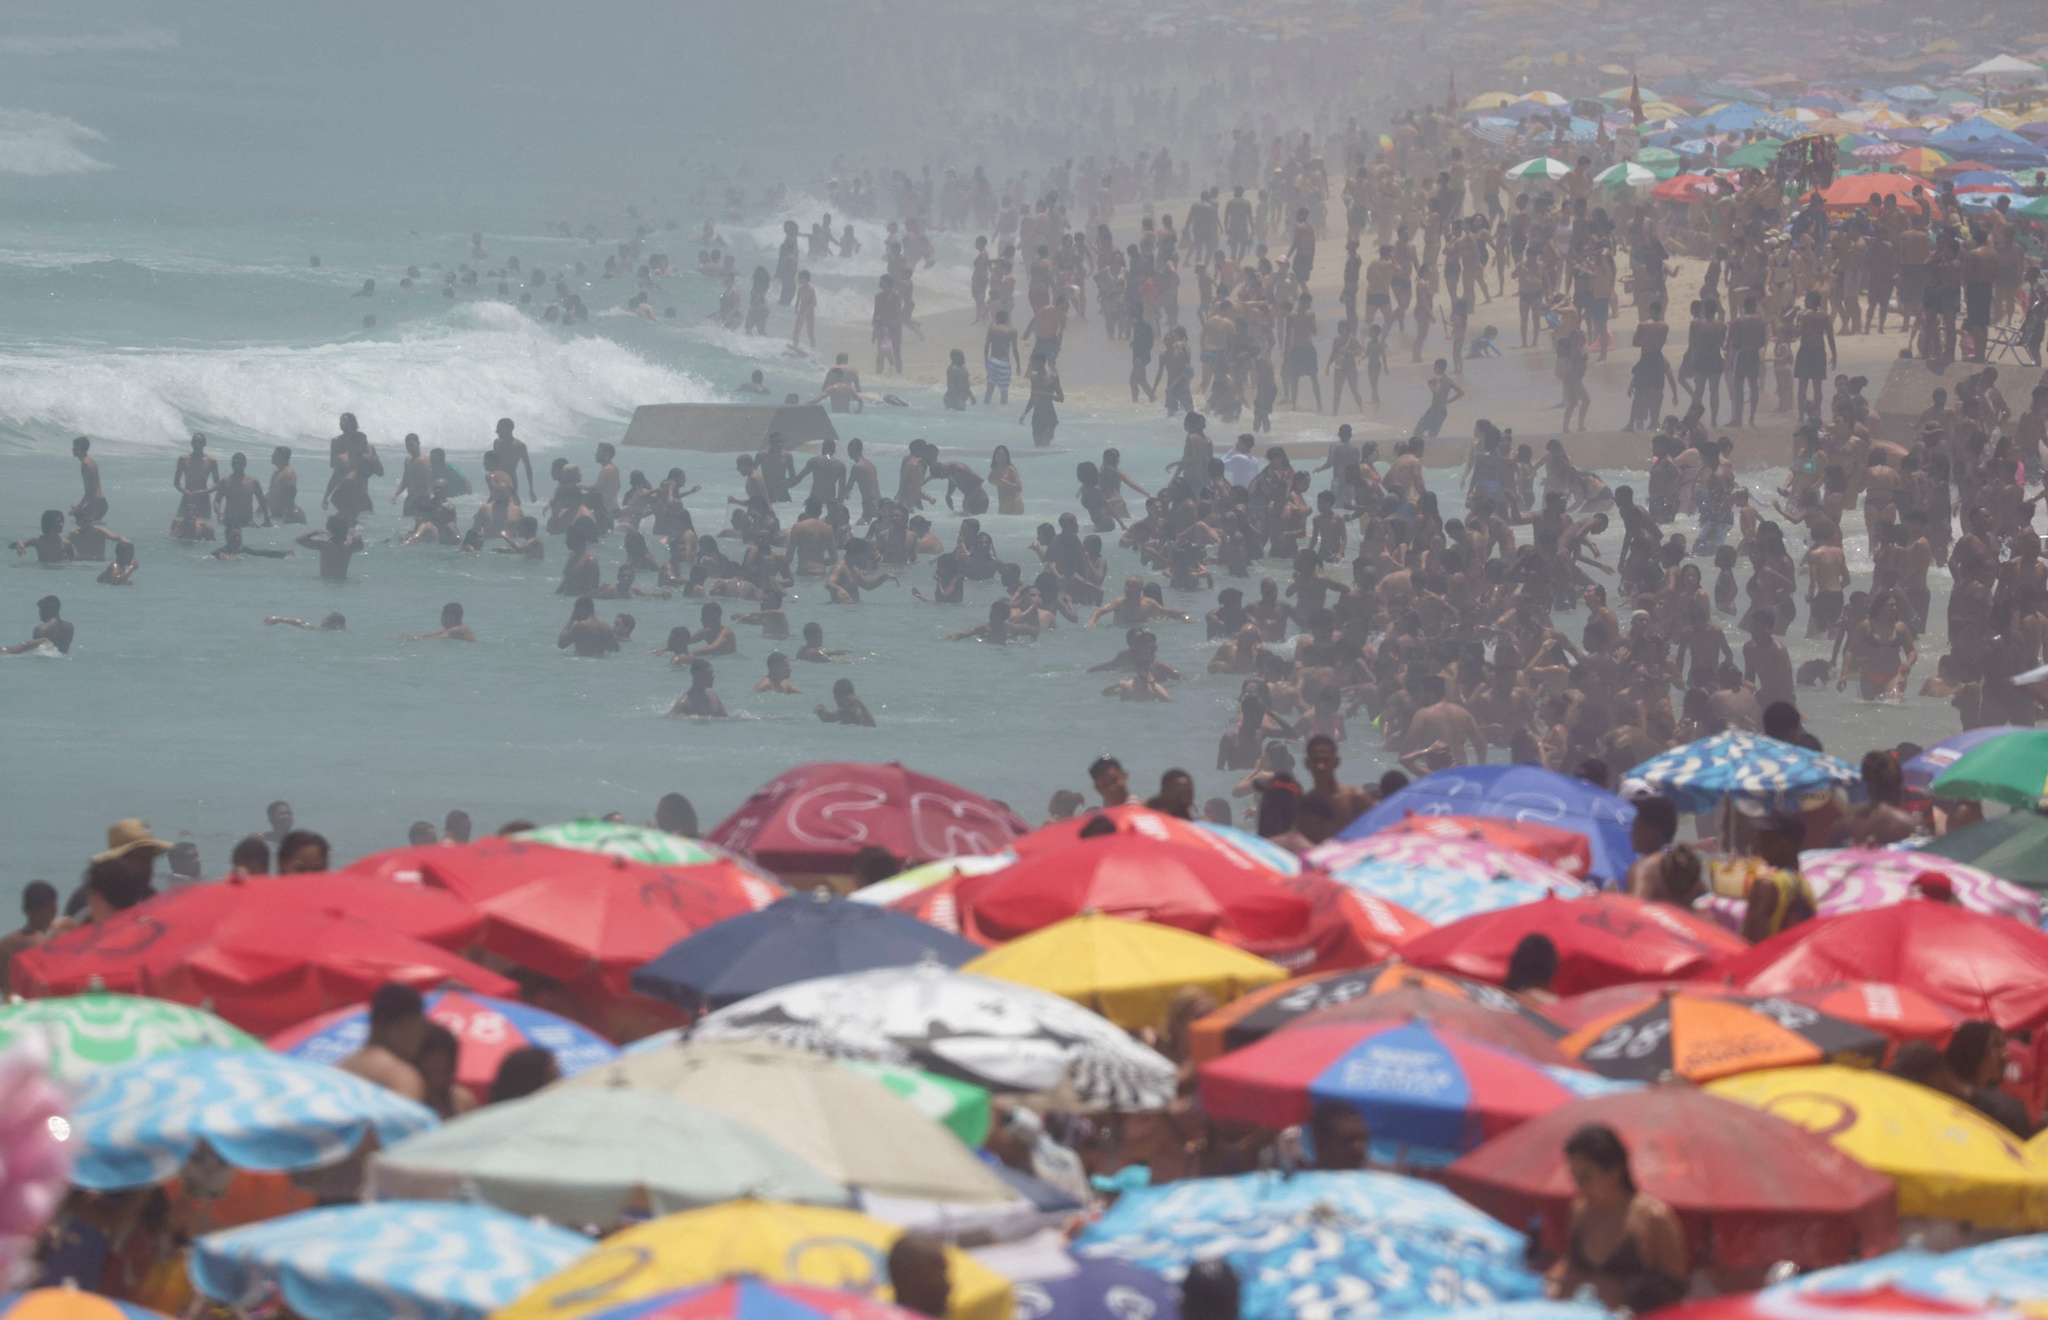 Calor extremo no Brasil é resultado de “empilhamento de fenômenos